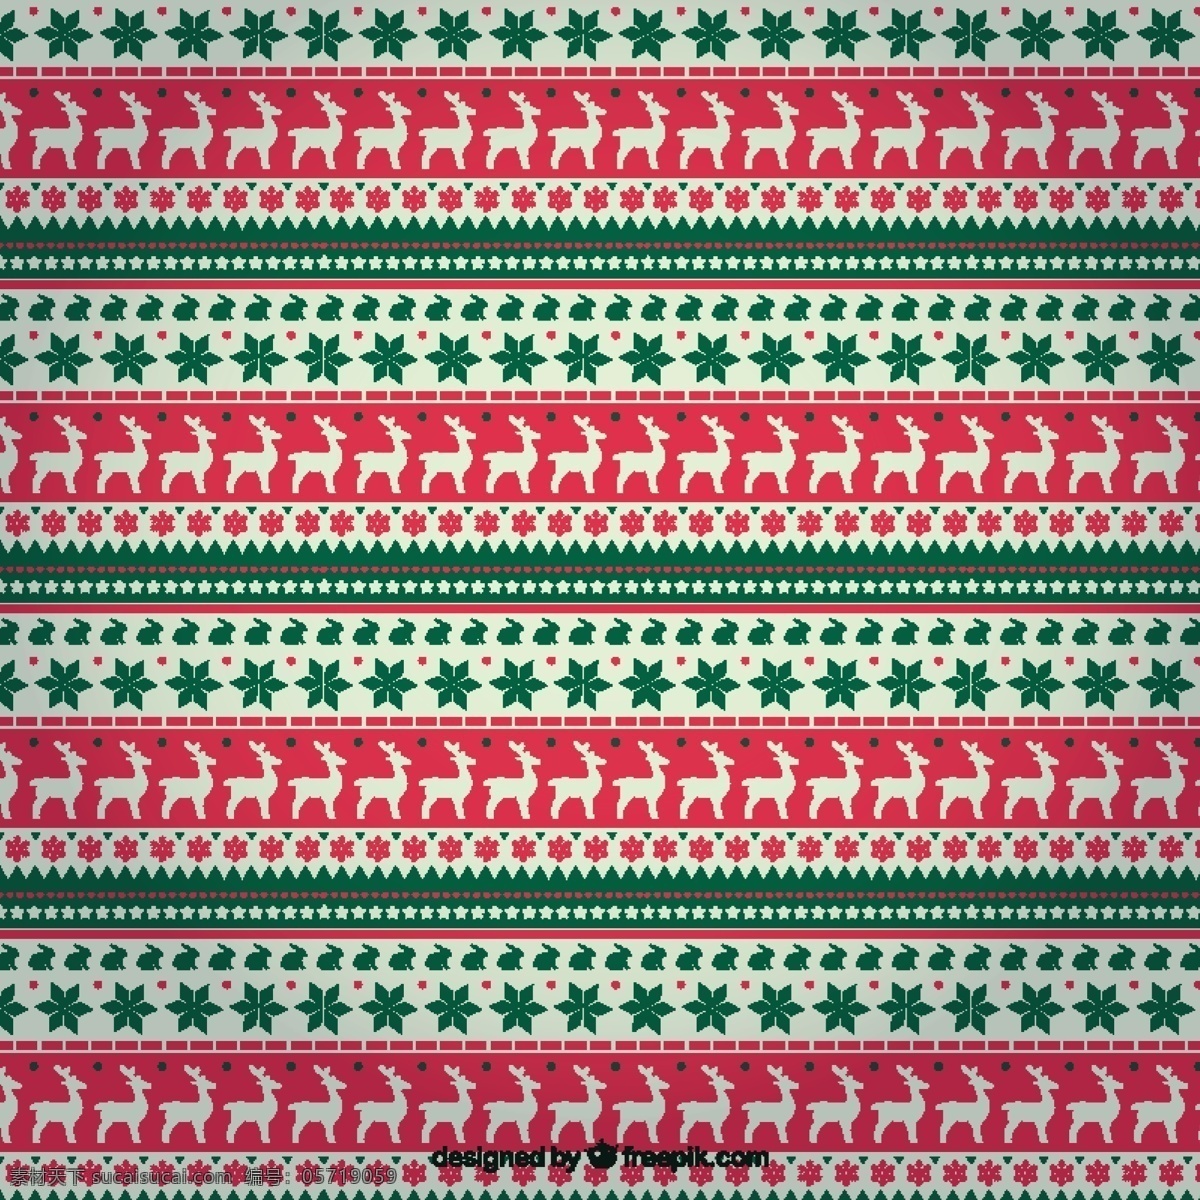 圣诞驯鹿图案 模式 圣诞节 圣诞快乐 冬天 庆典 节日 条纹 驯鹿 节日快乐 无缝模式 平安模式 无缝 季节 快乐 十二月 红色